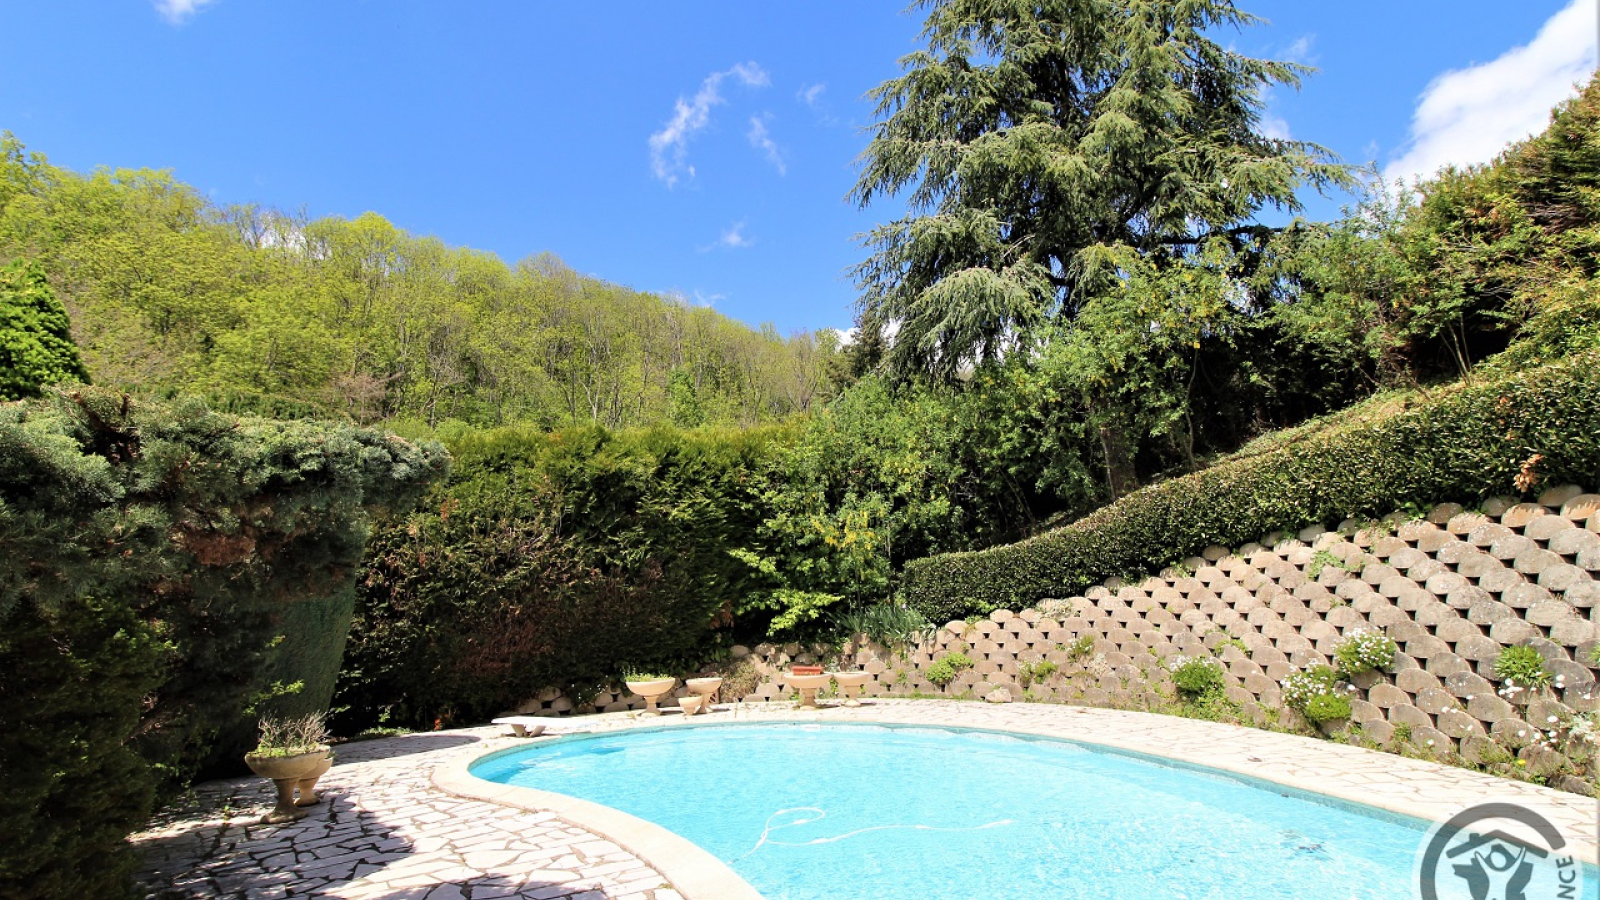 Chambres d'Hôtes 'Domaine de Romarand' à Quincié-en-Beaujolais, dans le Rhône : la piscine.